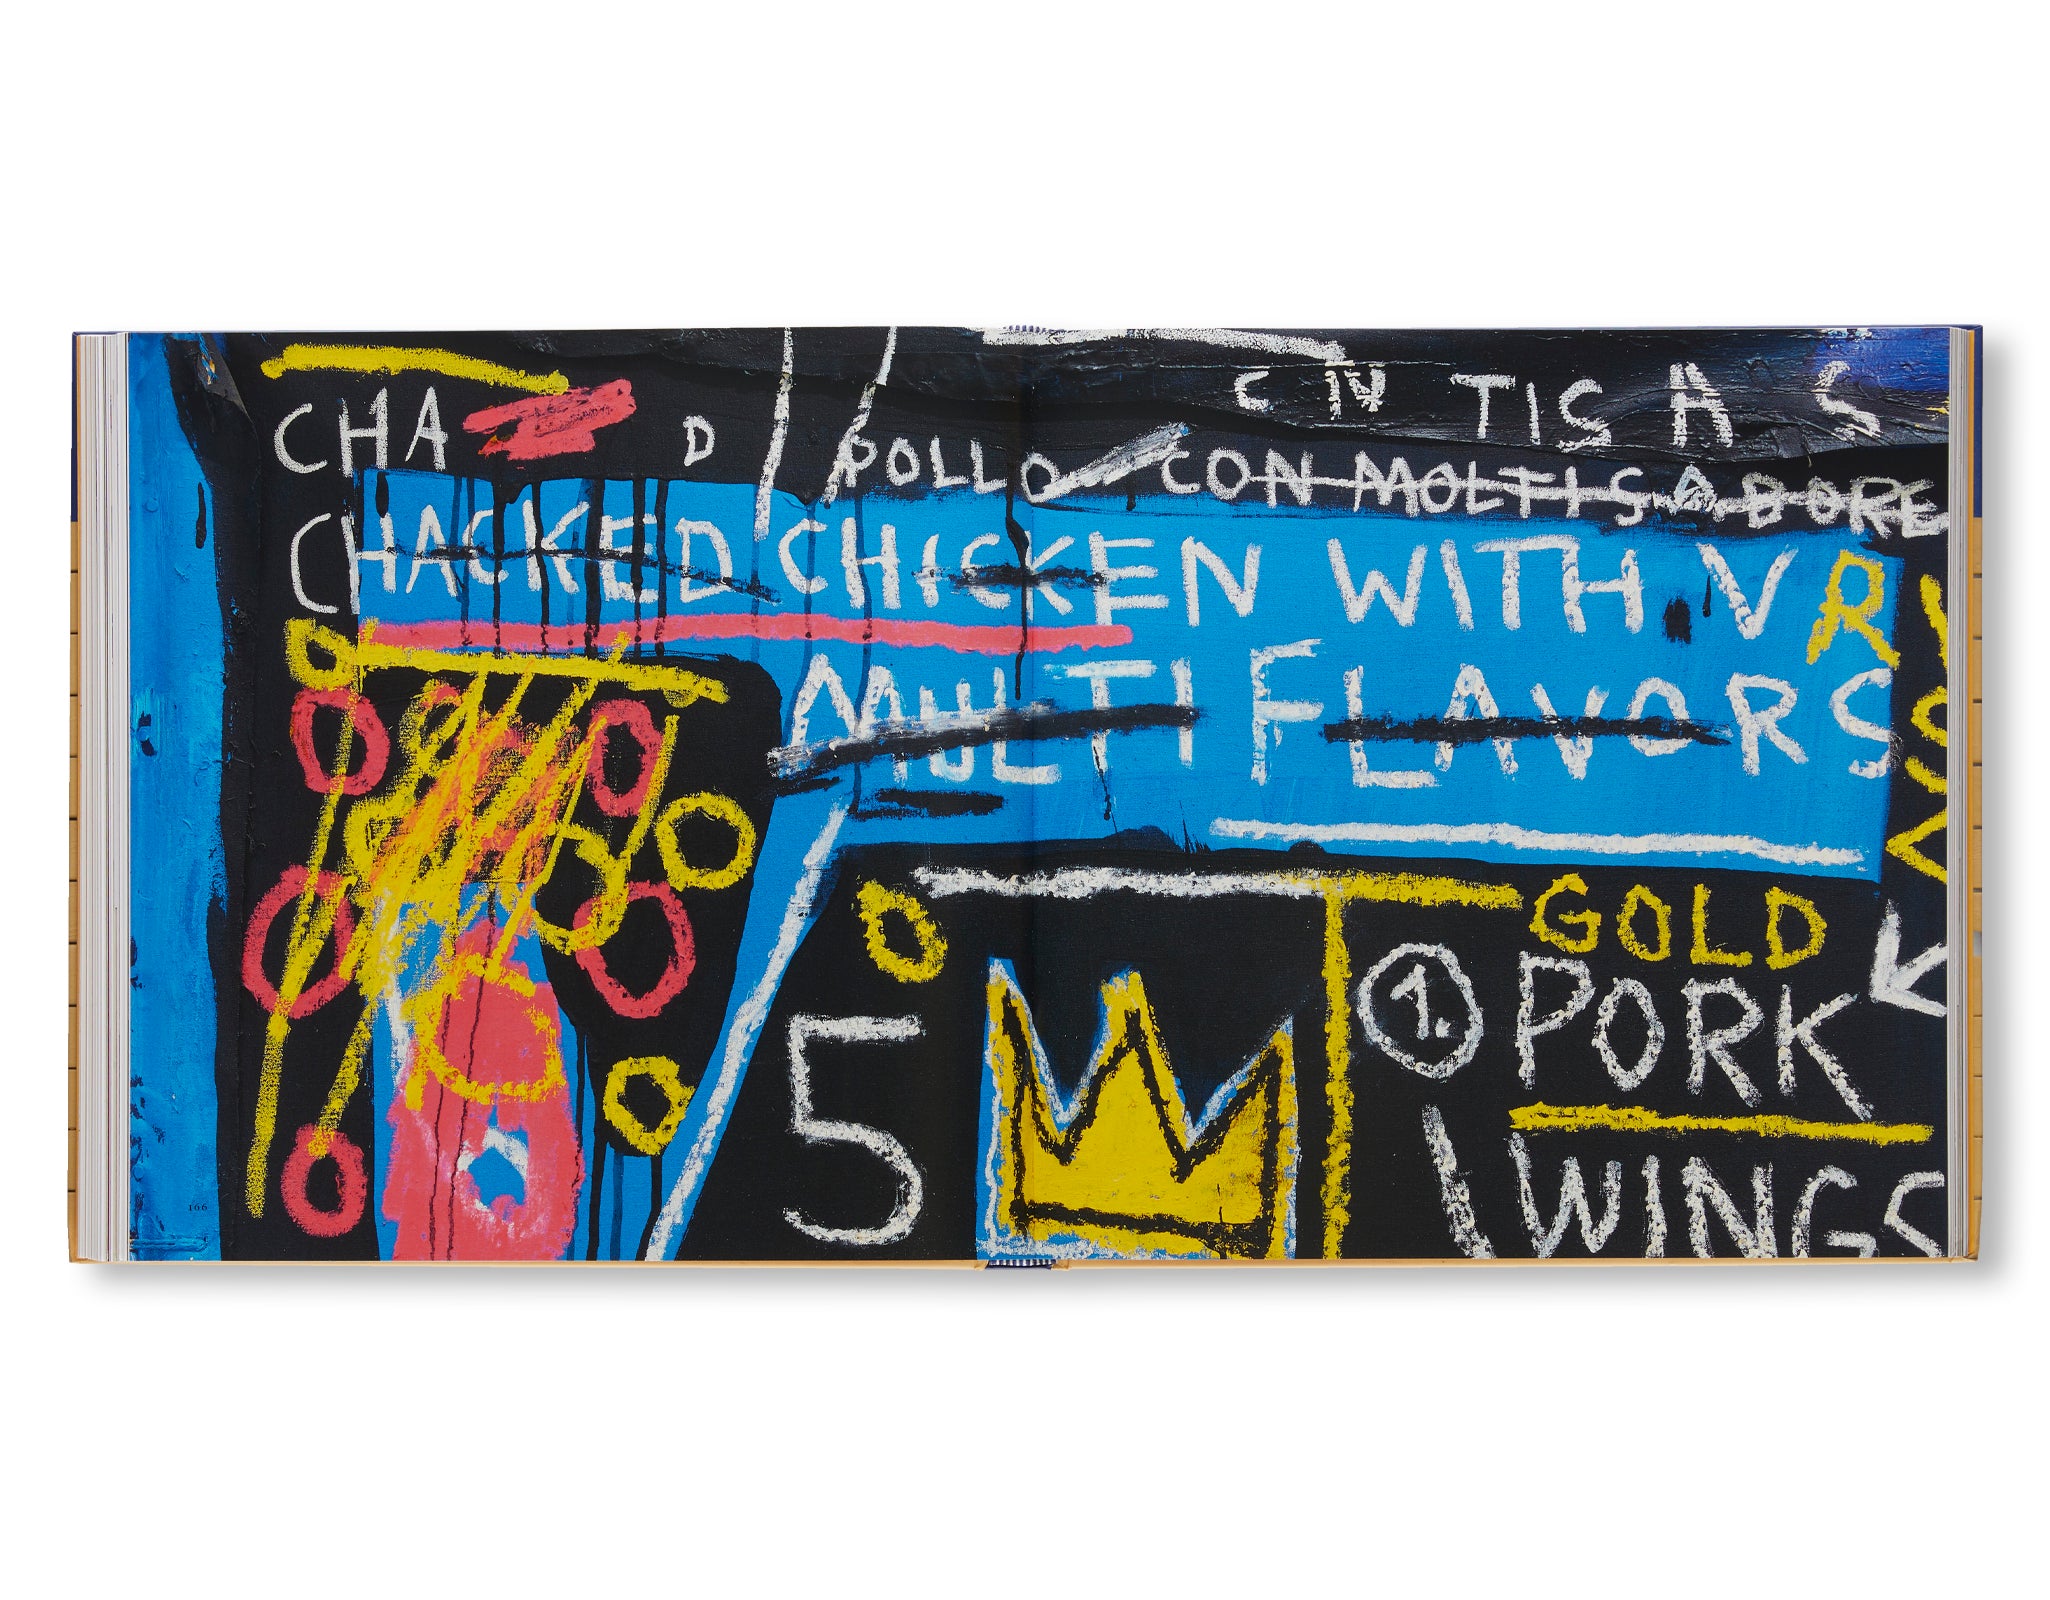 JEAN-MICHEL BASQUIAT: ART AND OBJECTHOOD by Jean-Michel Basquiat